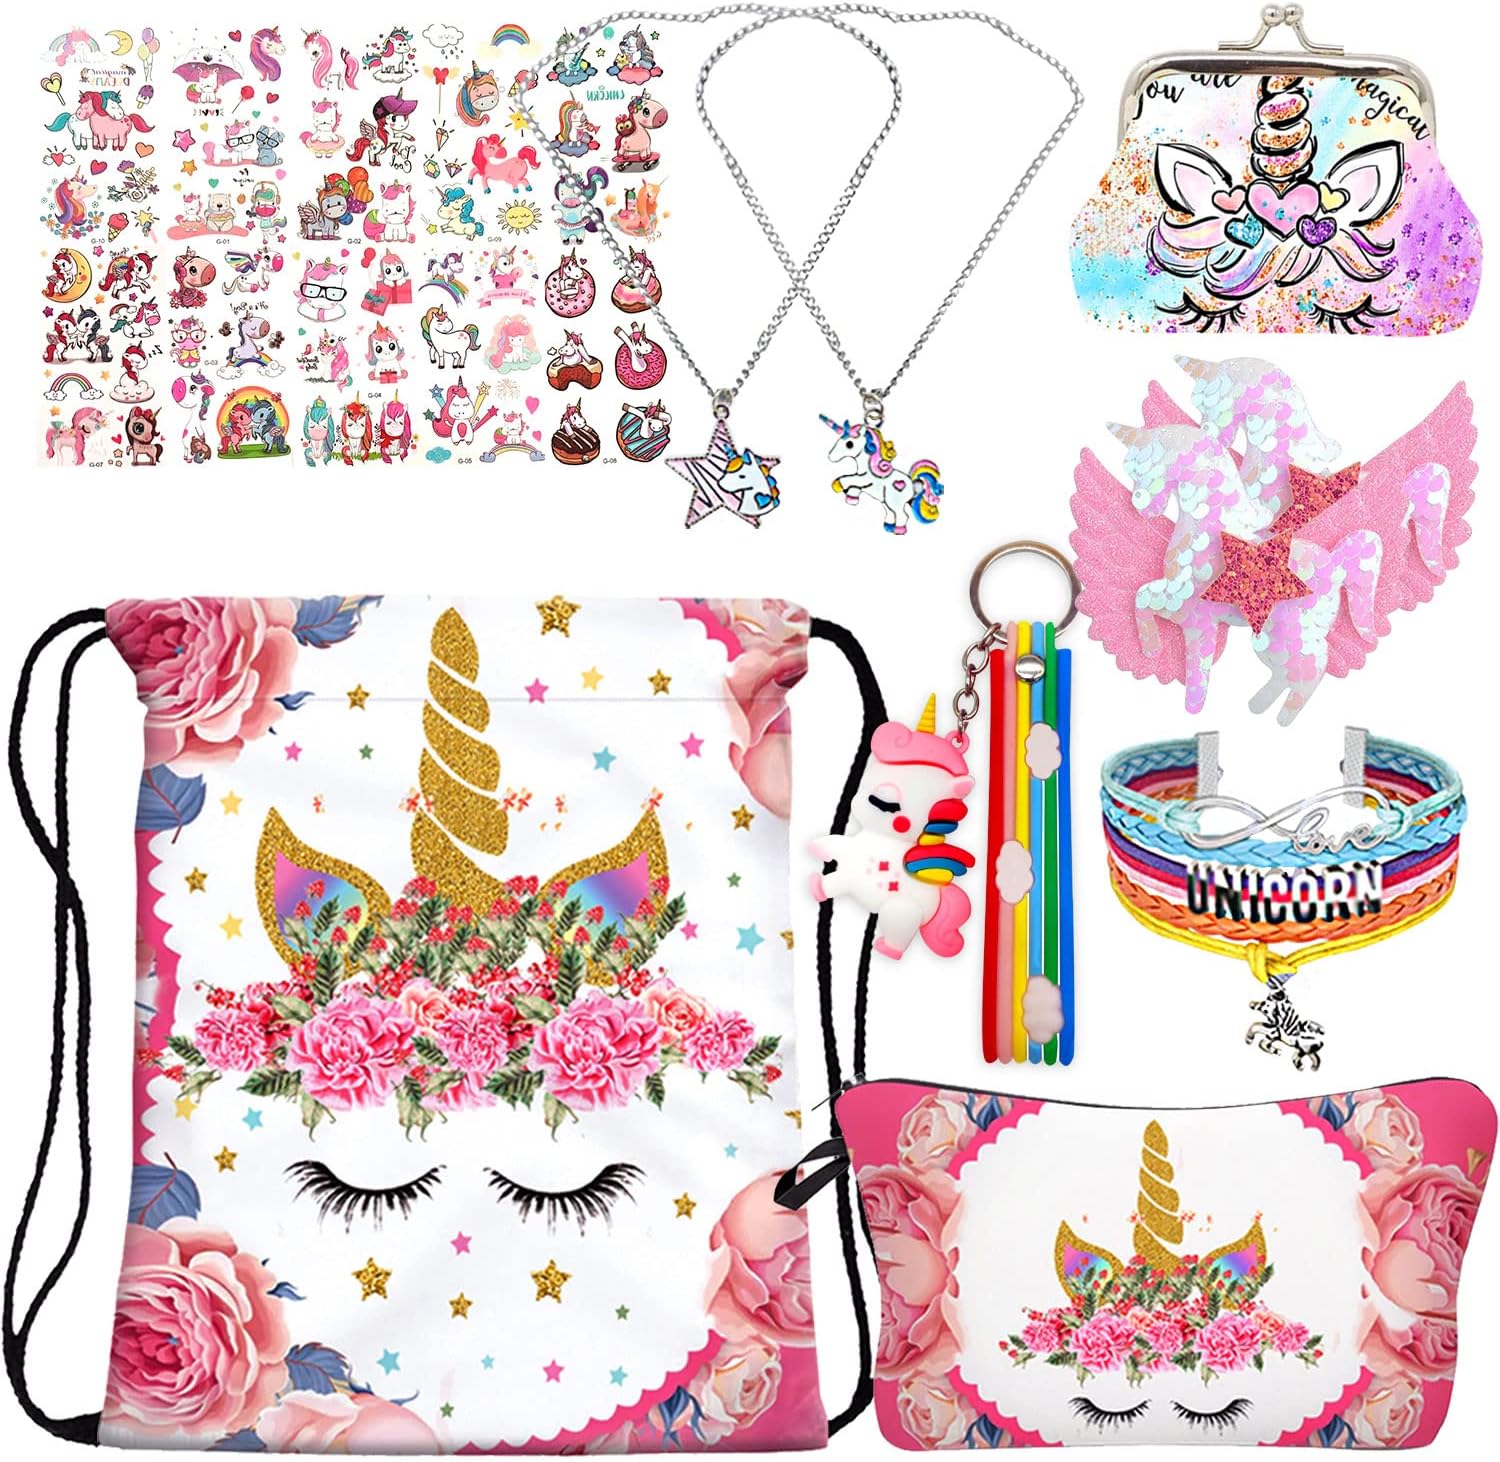 Unicorn Gifts - Unicorn Drawstring Backpack/Make Up Bag/Slap Bracelet